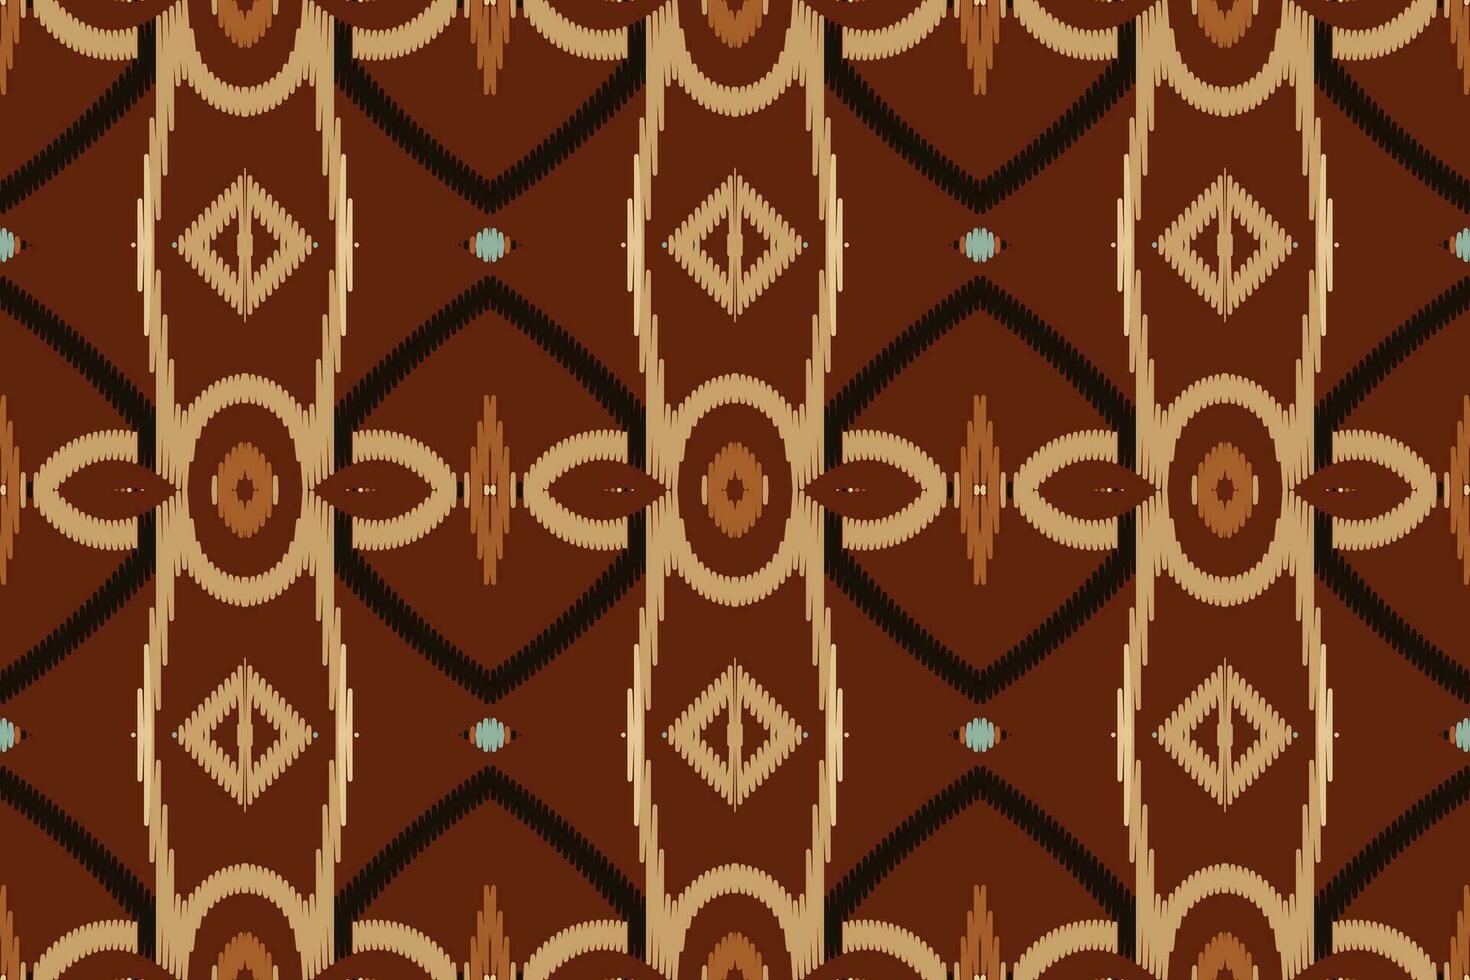 ikat damassé broderie Contexte. ikat dessins géométrique ethnique Oriental modèle traditionnel. ikat aztèque style abstrait conception pour impression texture, tissu, sari, sari, tapis. vecteur